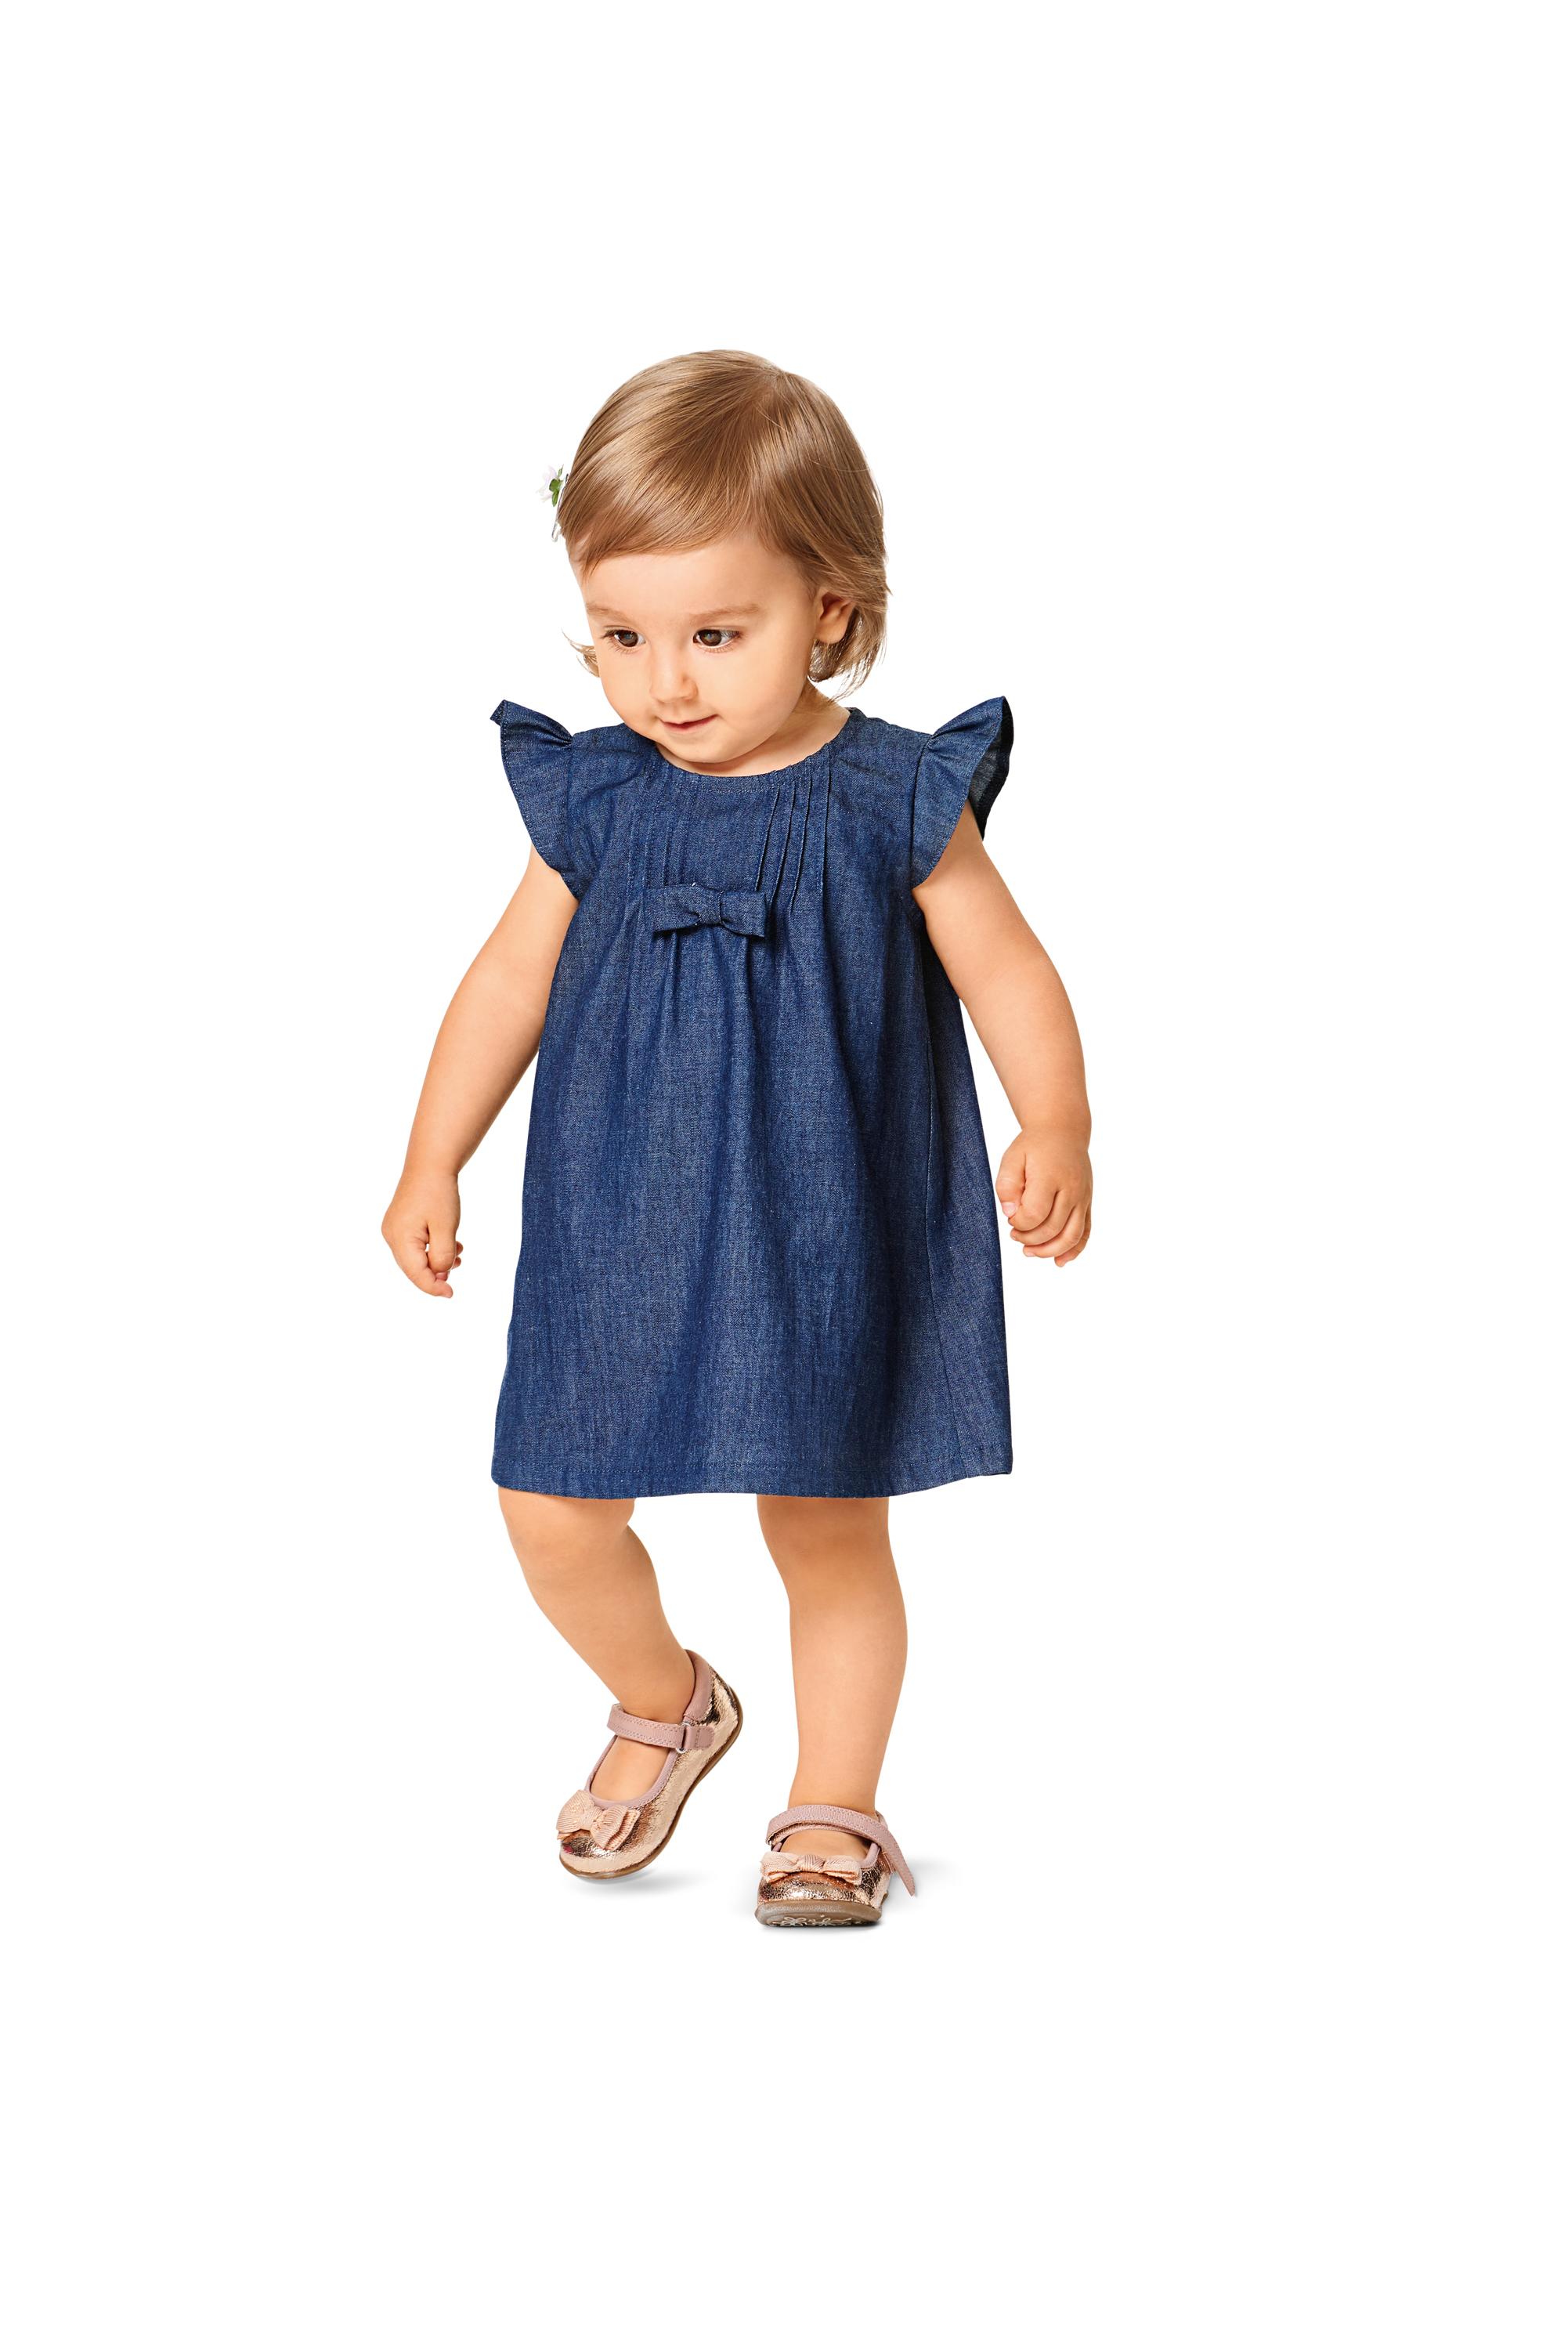 Burda B9358 Baby Dress, Top and Panties